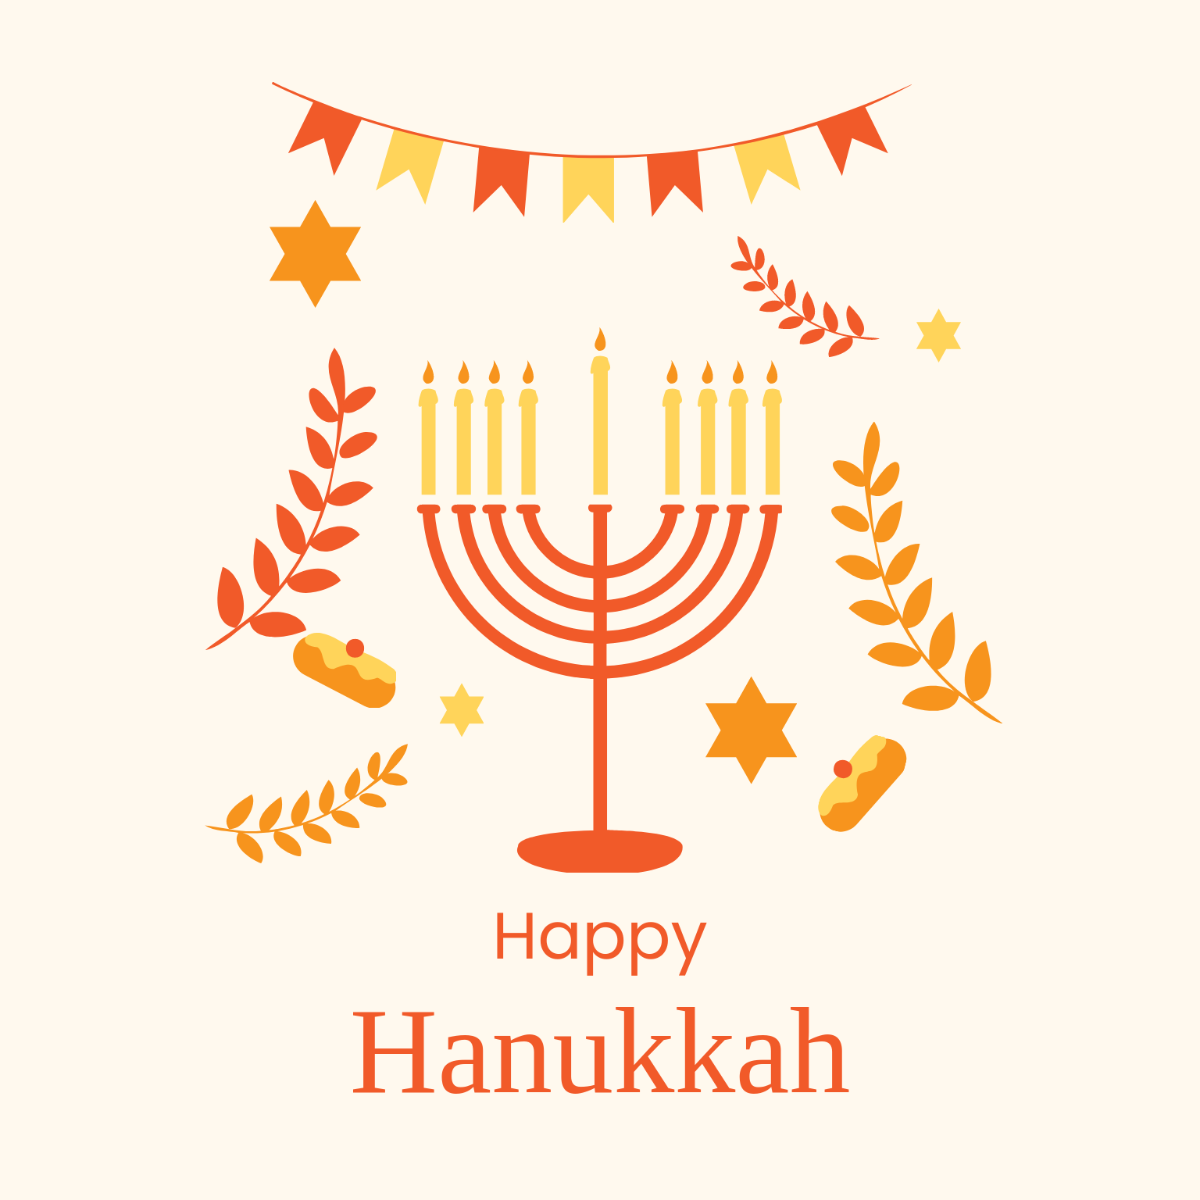 Free Hanukkah Illustration Template